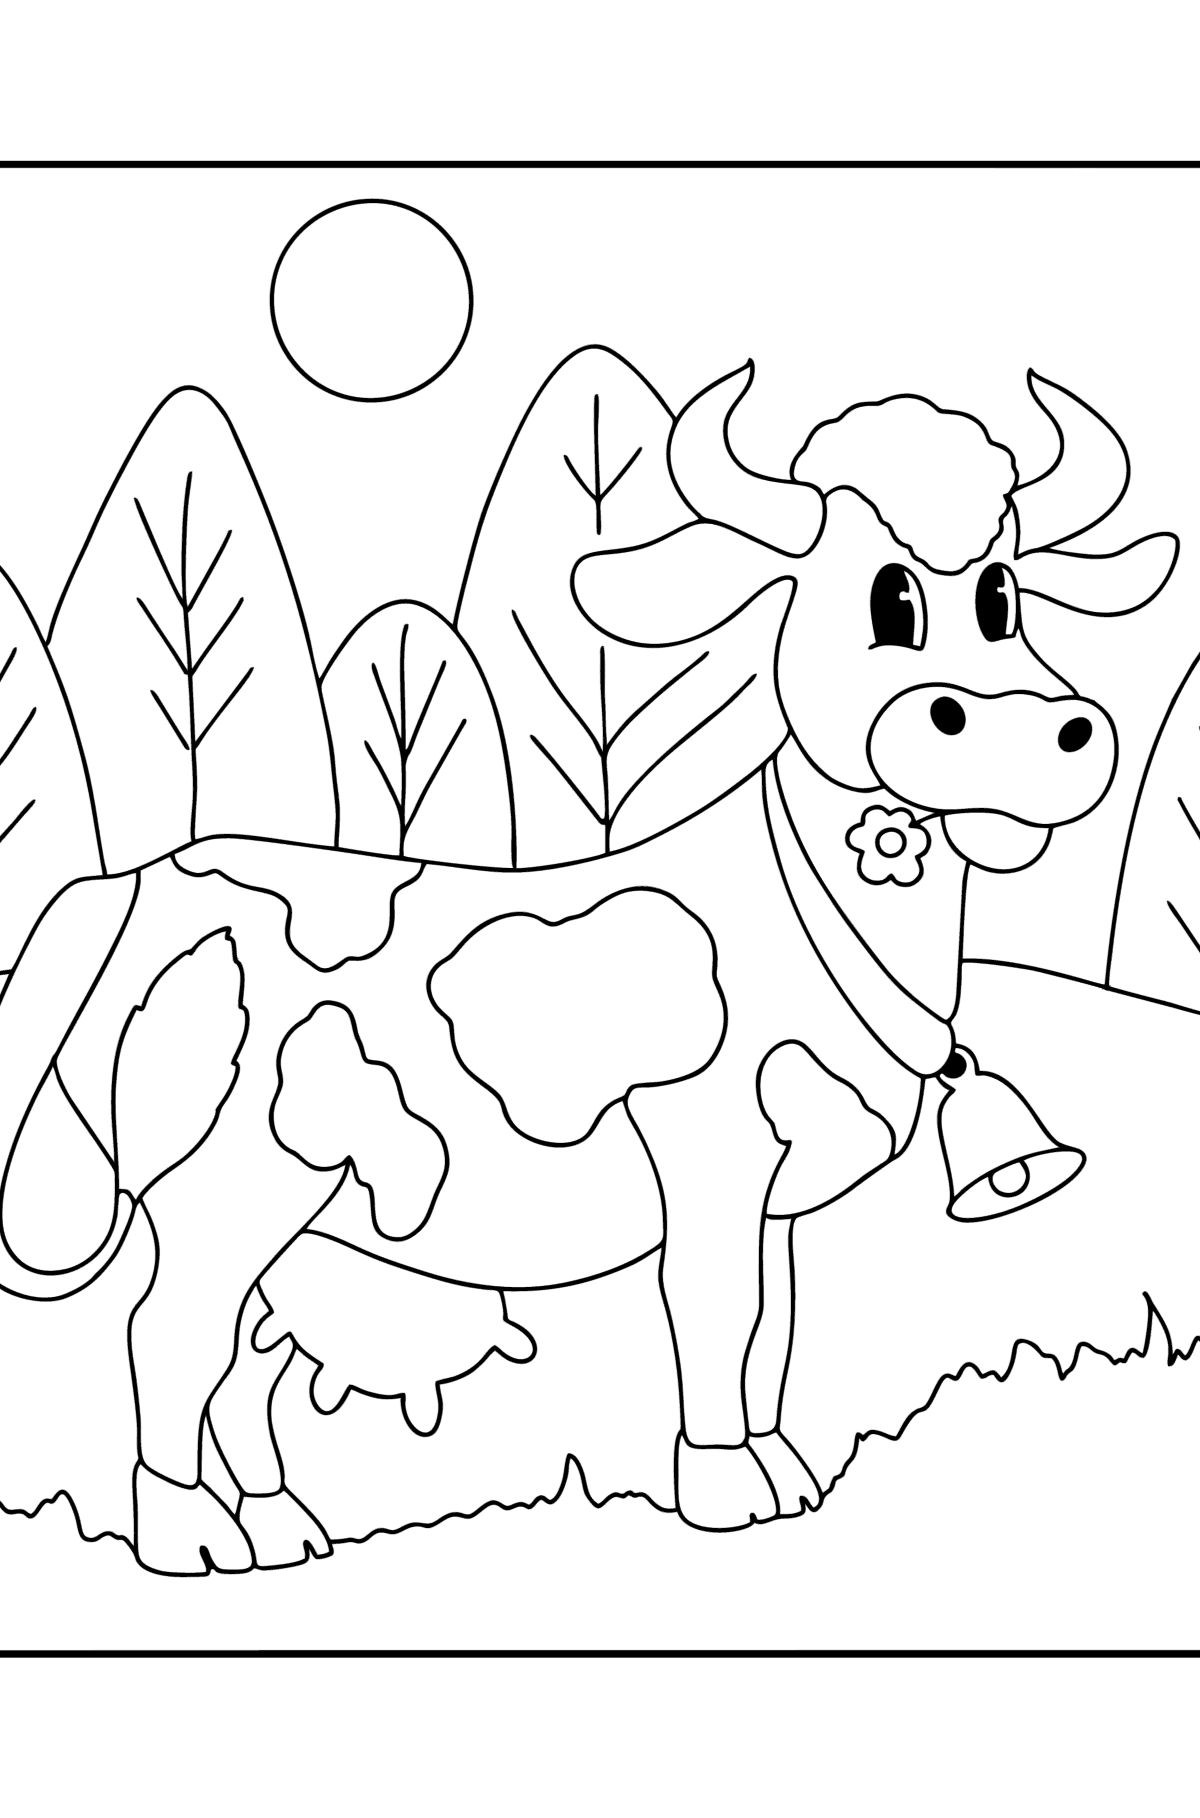 Desen de colorat Vaca realistă - Desene de colorat pentru copii